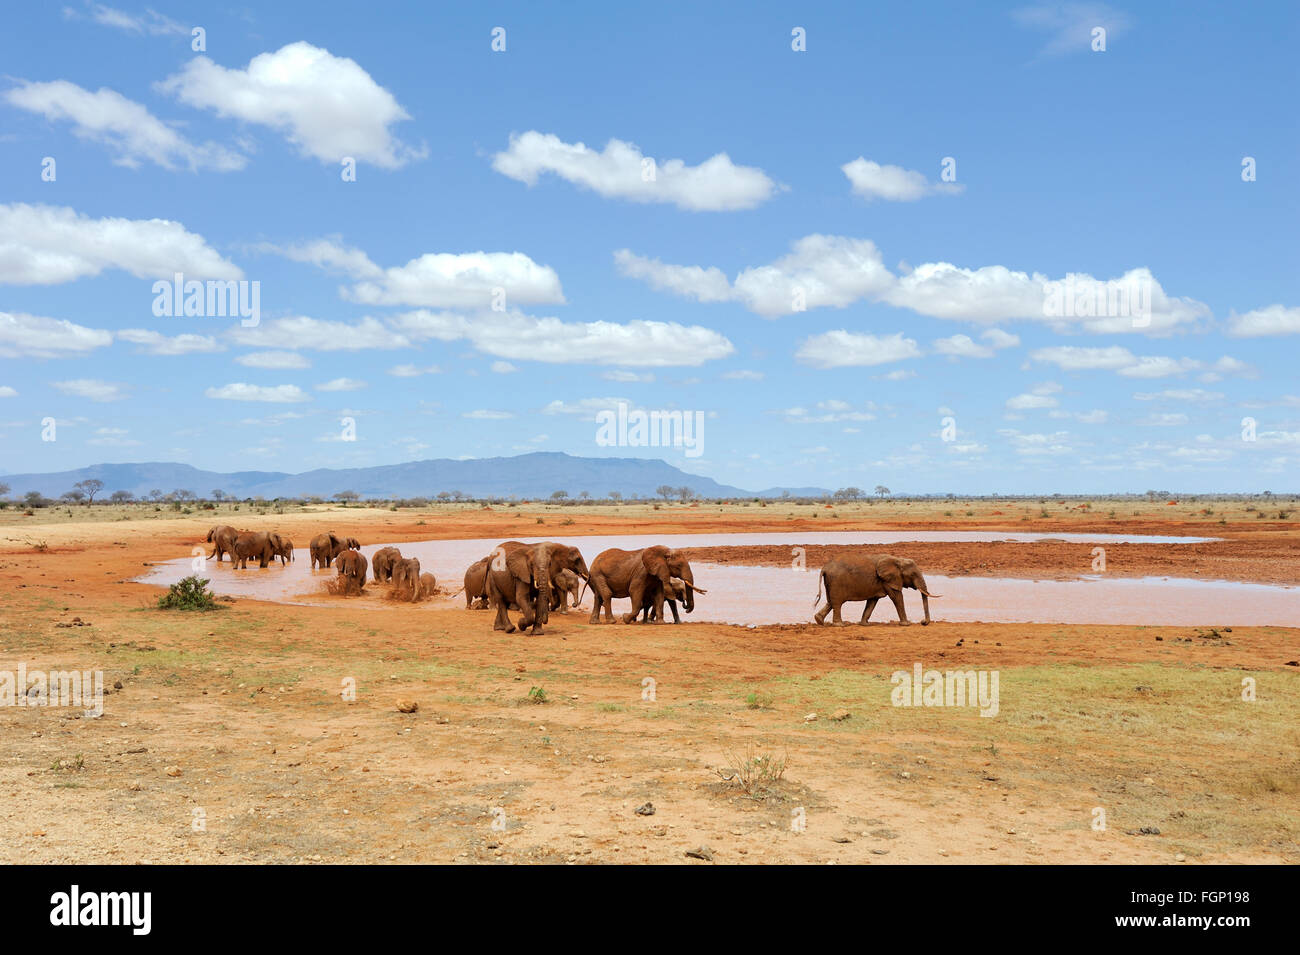 Elephant in lake. National park of Kenya, Africa Stock Photo